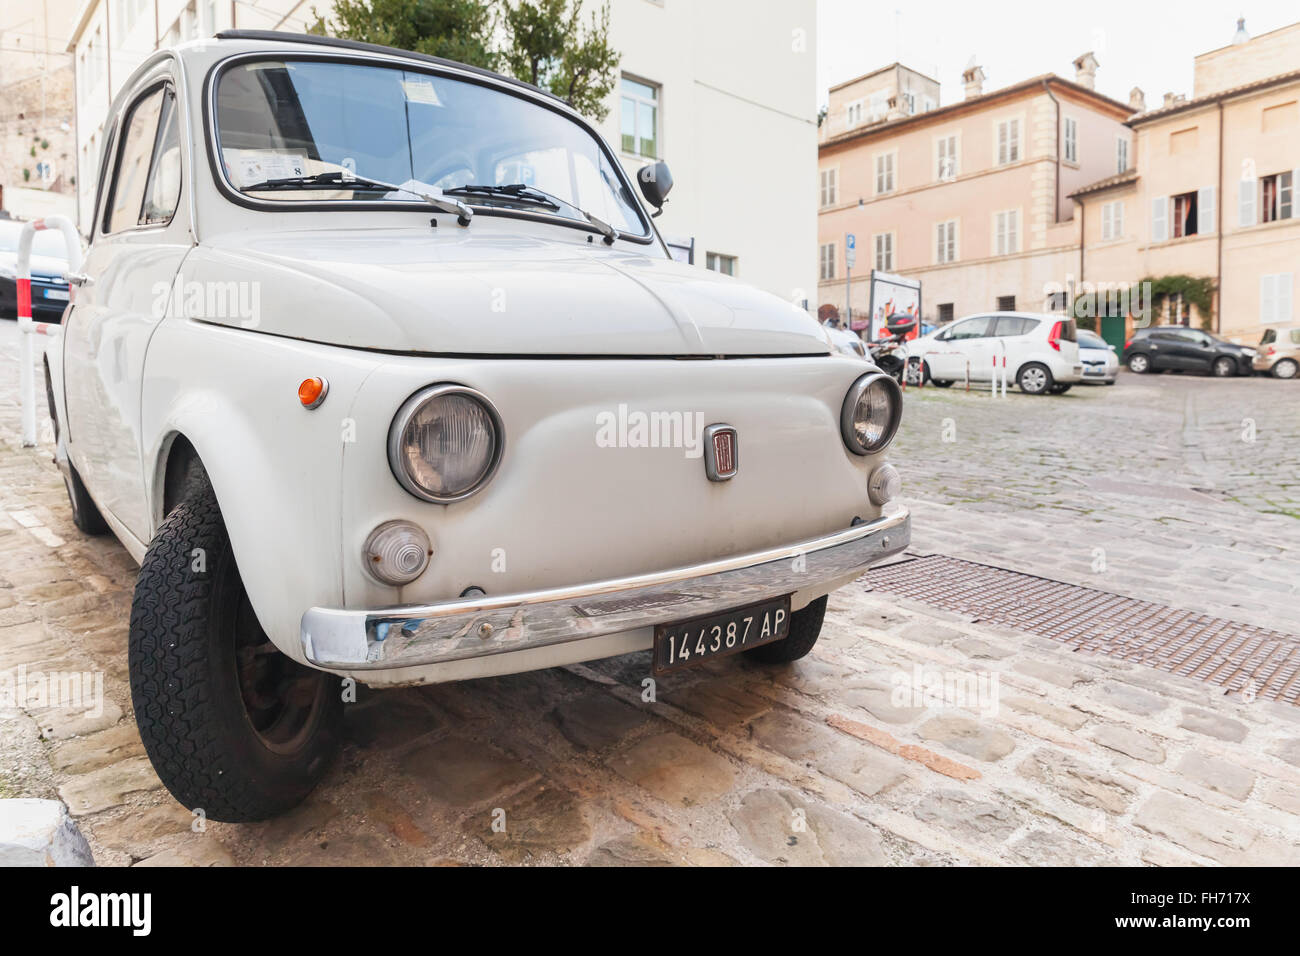 Fermo, Italia - 11 Febbraio 2016: vecchia FIAT 500 bianco città L'auto sulla strada della città italiana, closeup vista frontale Foto Stock